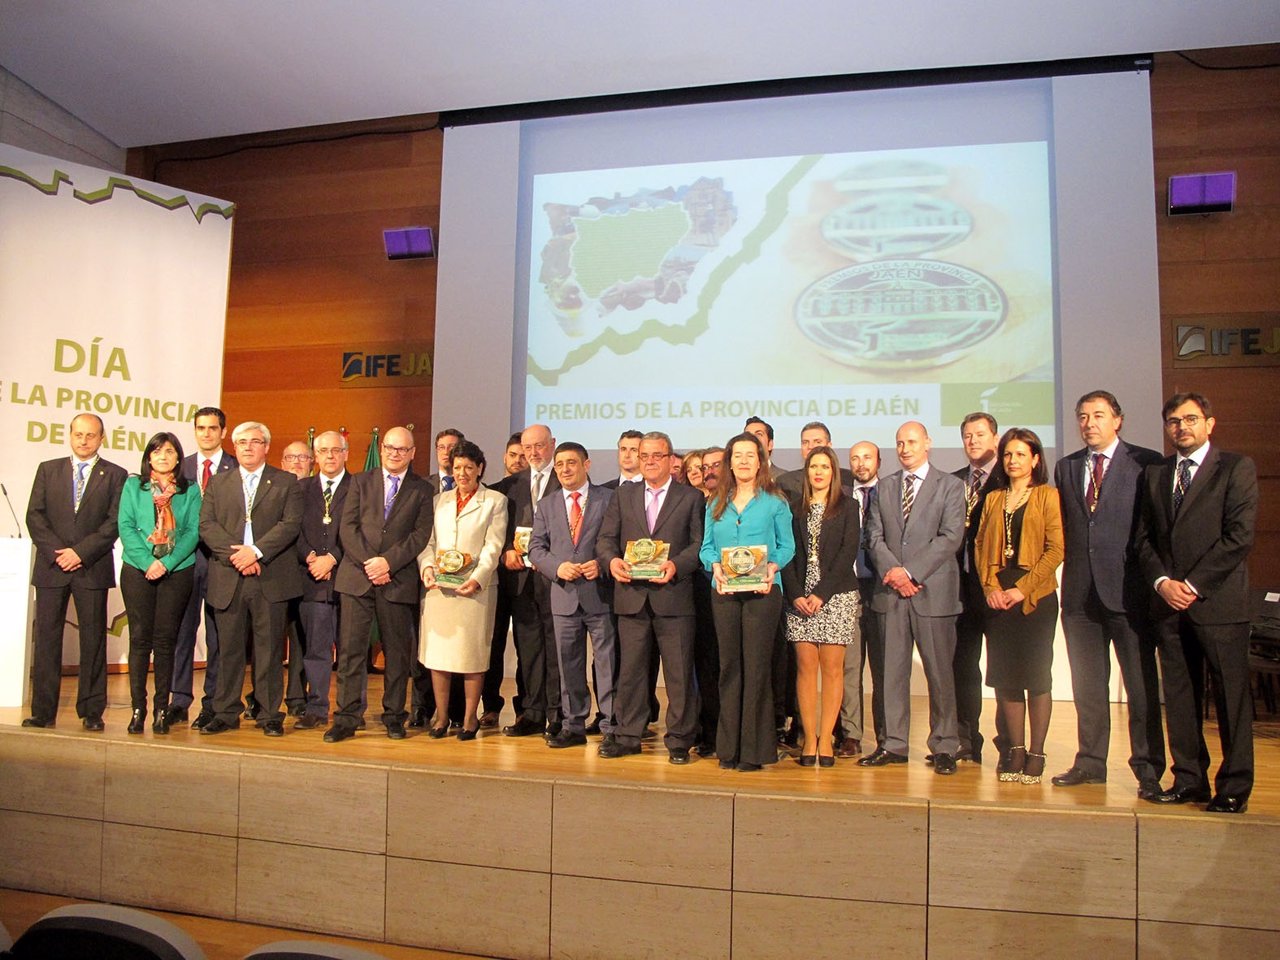 Foto de familia de los premiados y miembros de la Diputación.